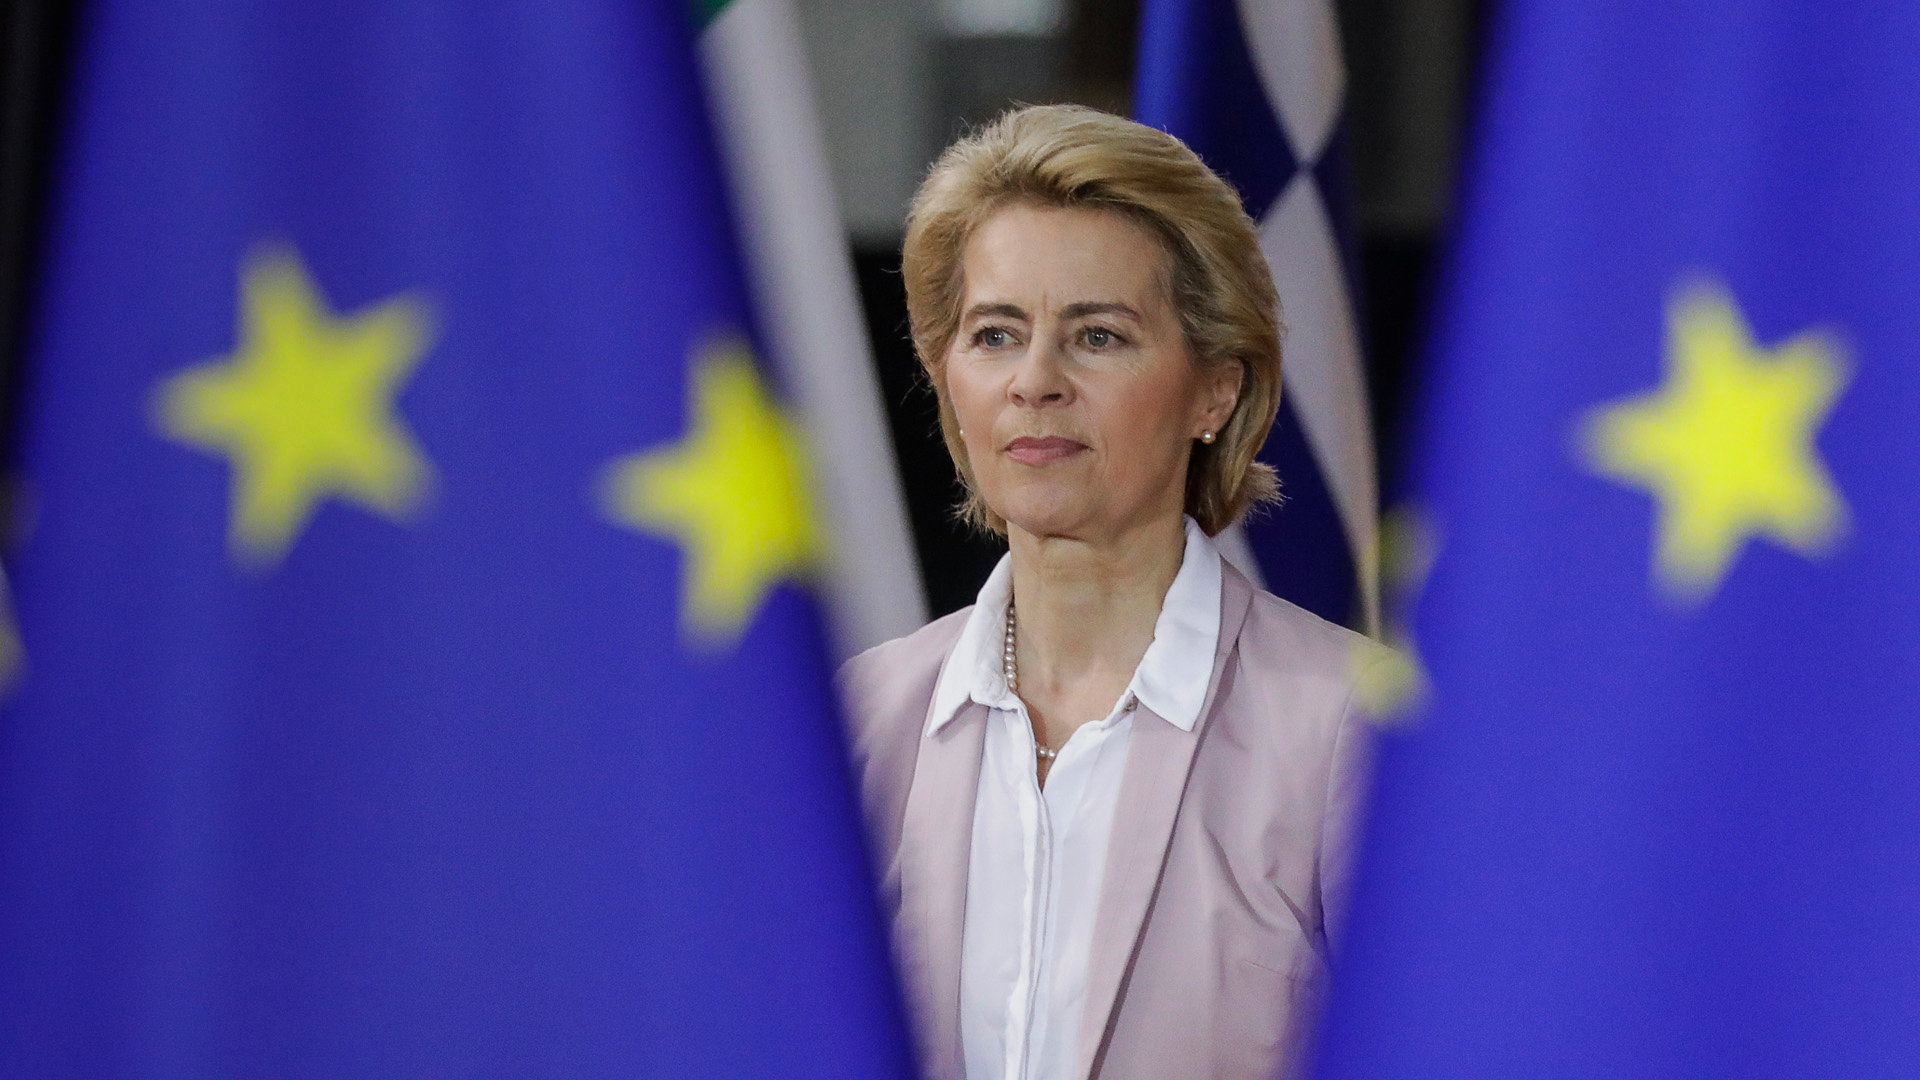 Ursula von der Leyen neben der Flagge der Europäischen Union | Bildquelle: dpa